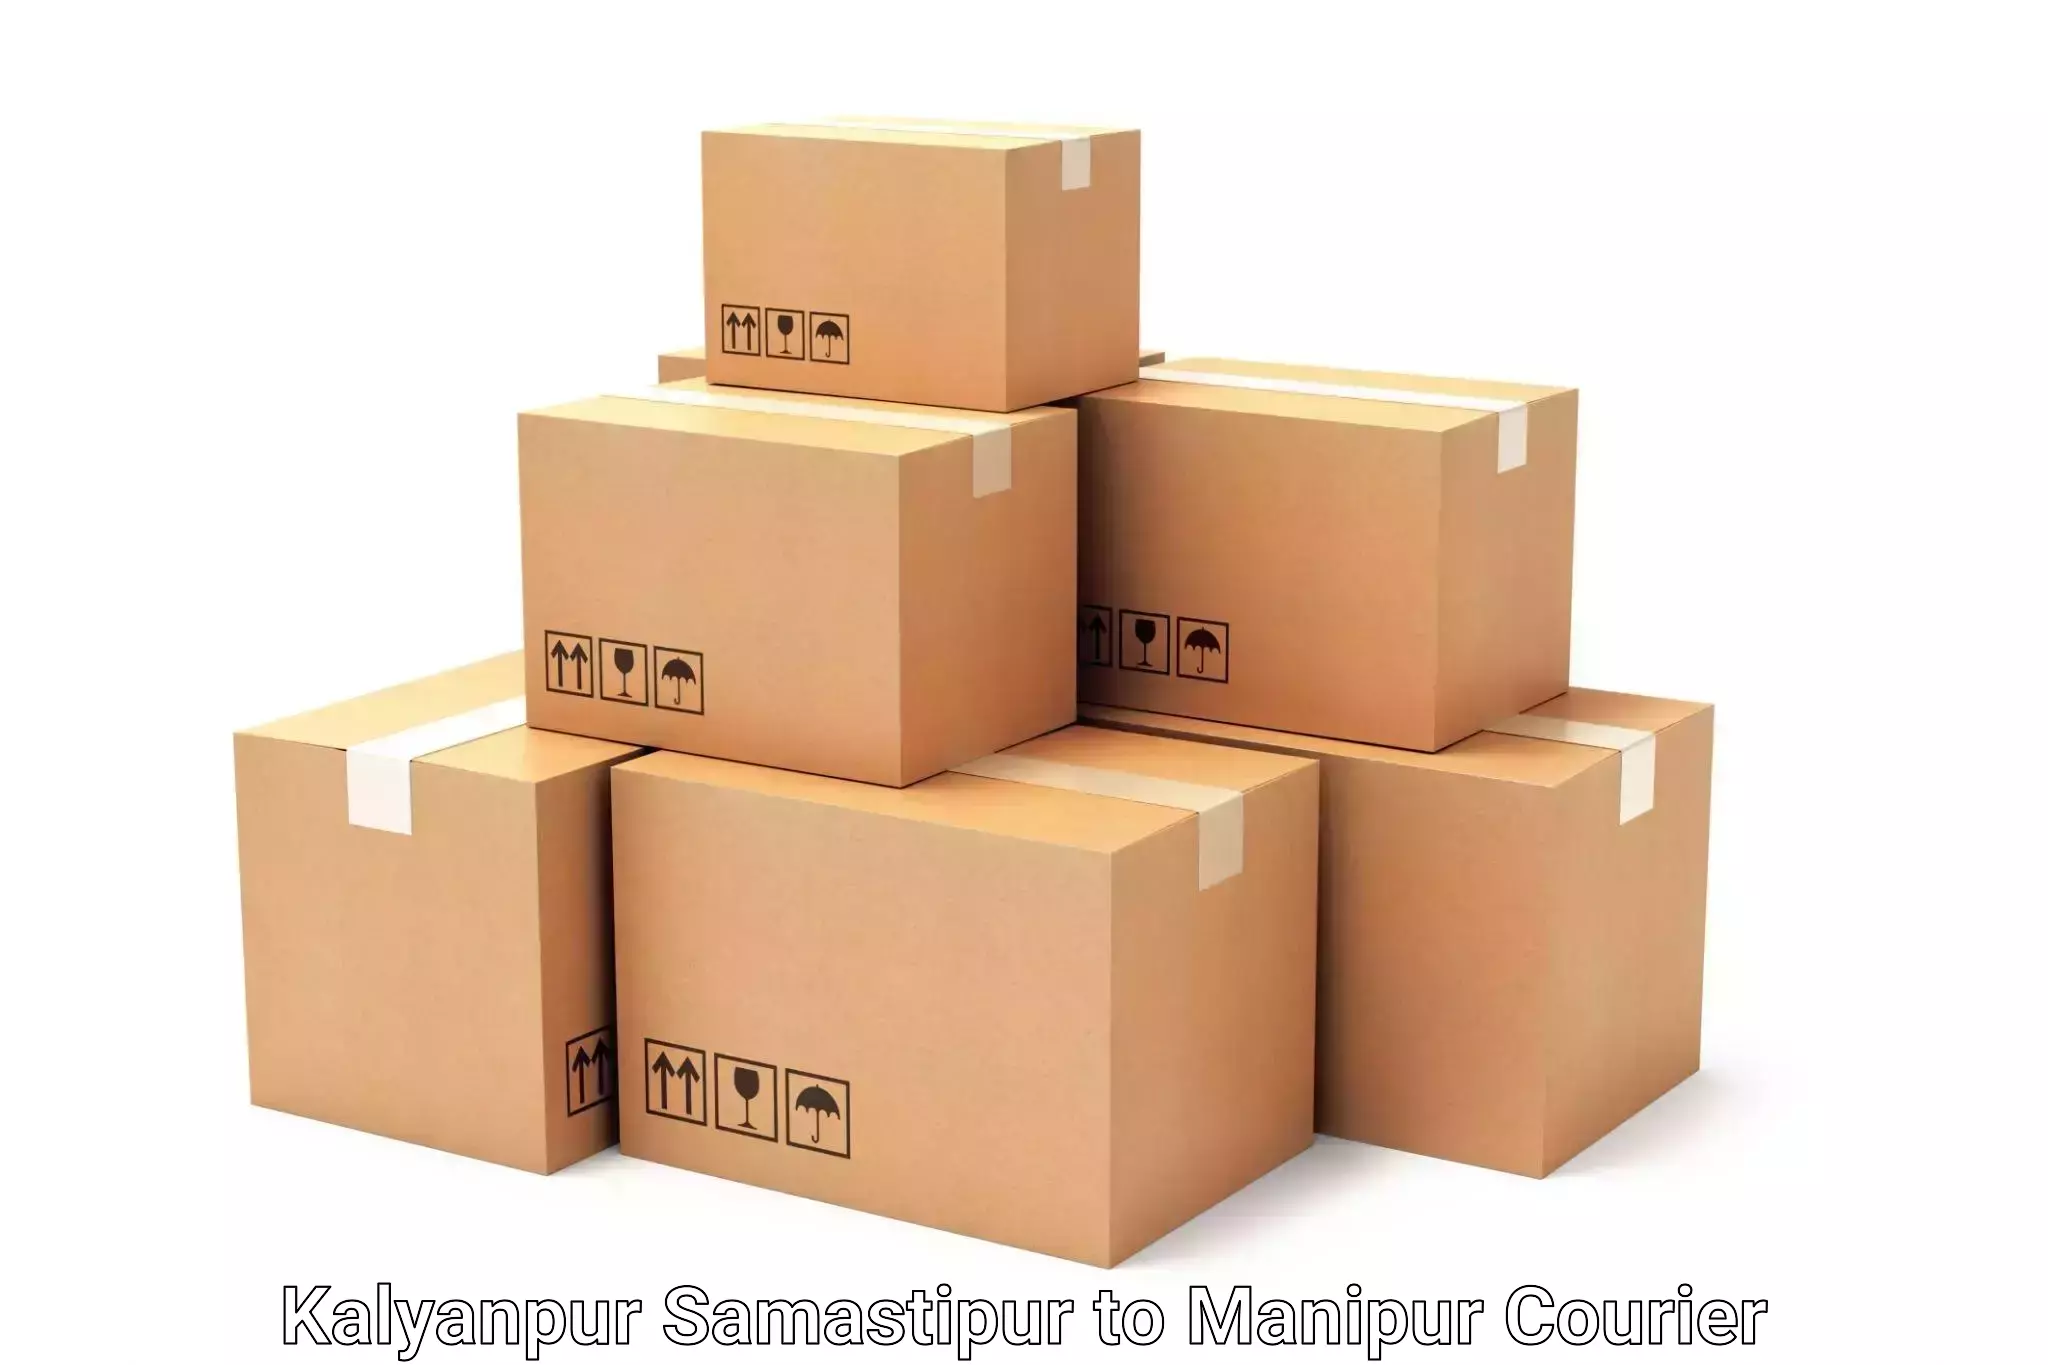 Luggage forwarding service Kalyanpur Samastipur to Moirang